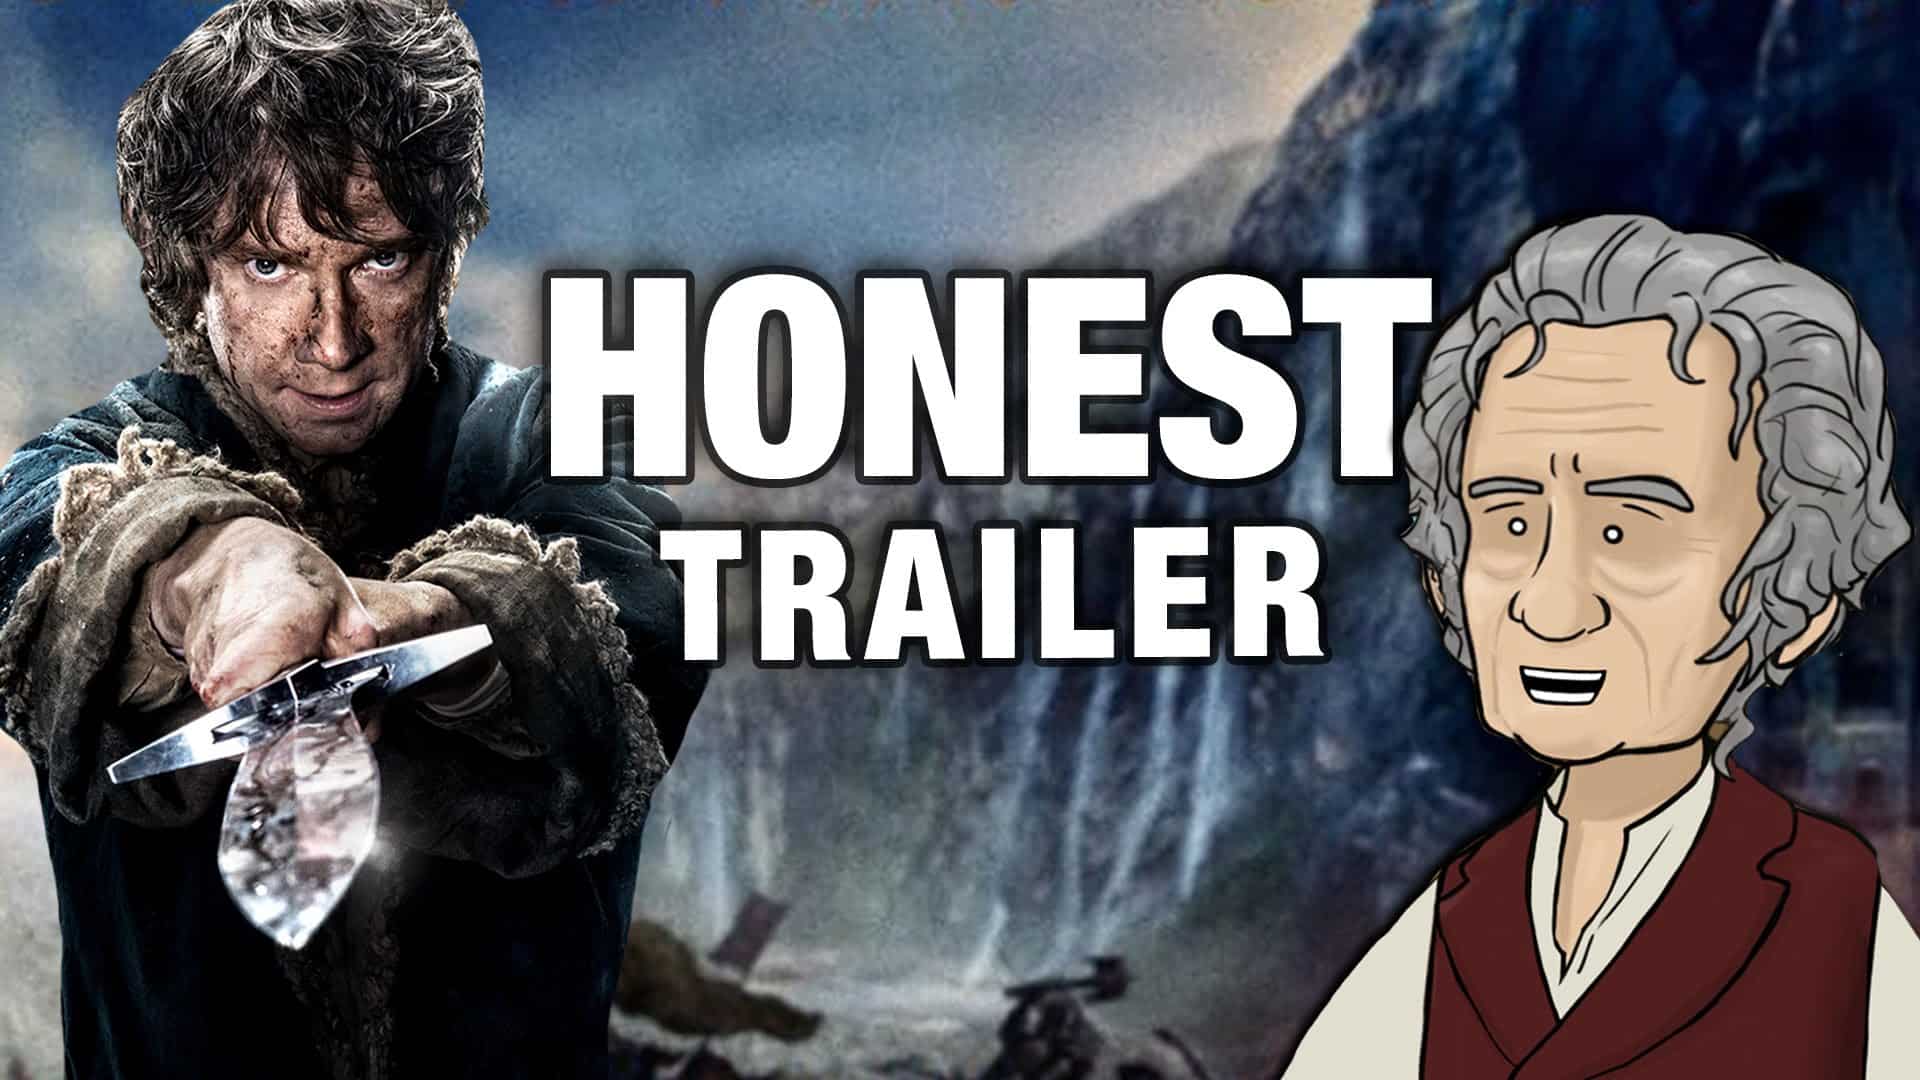 Honest Trailer - The Hobbit: Battle of the Five Armies